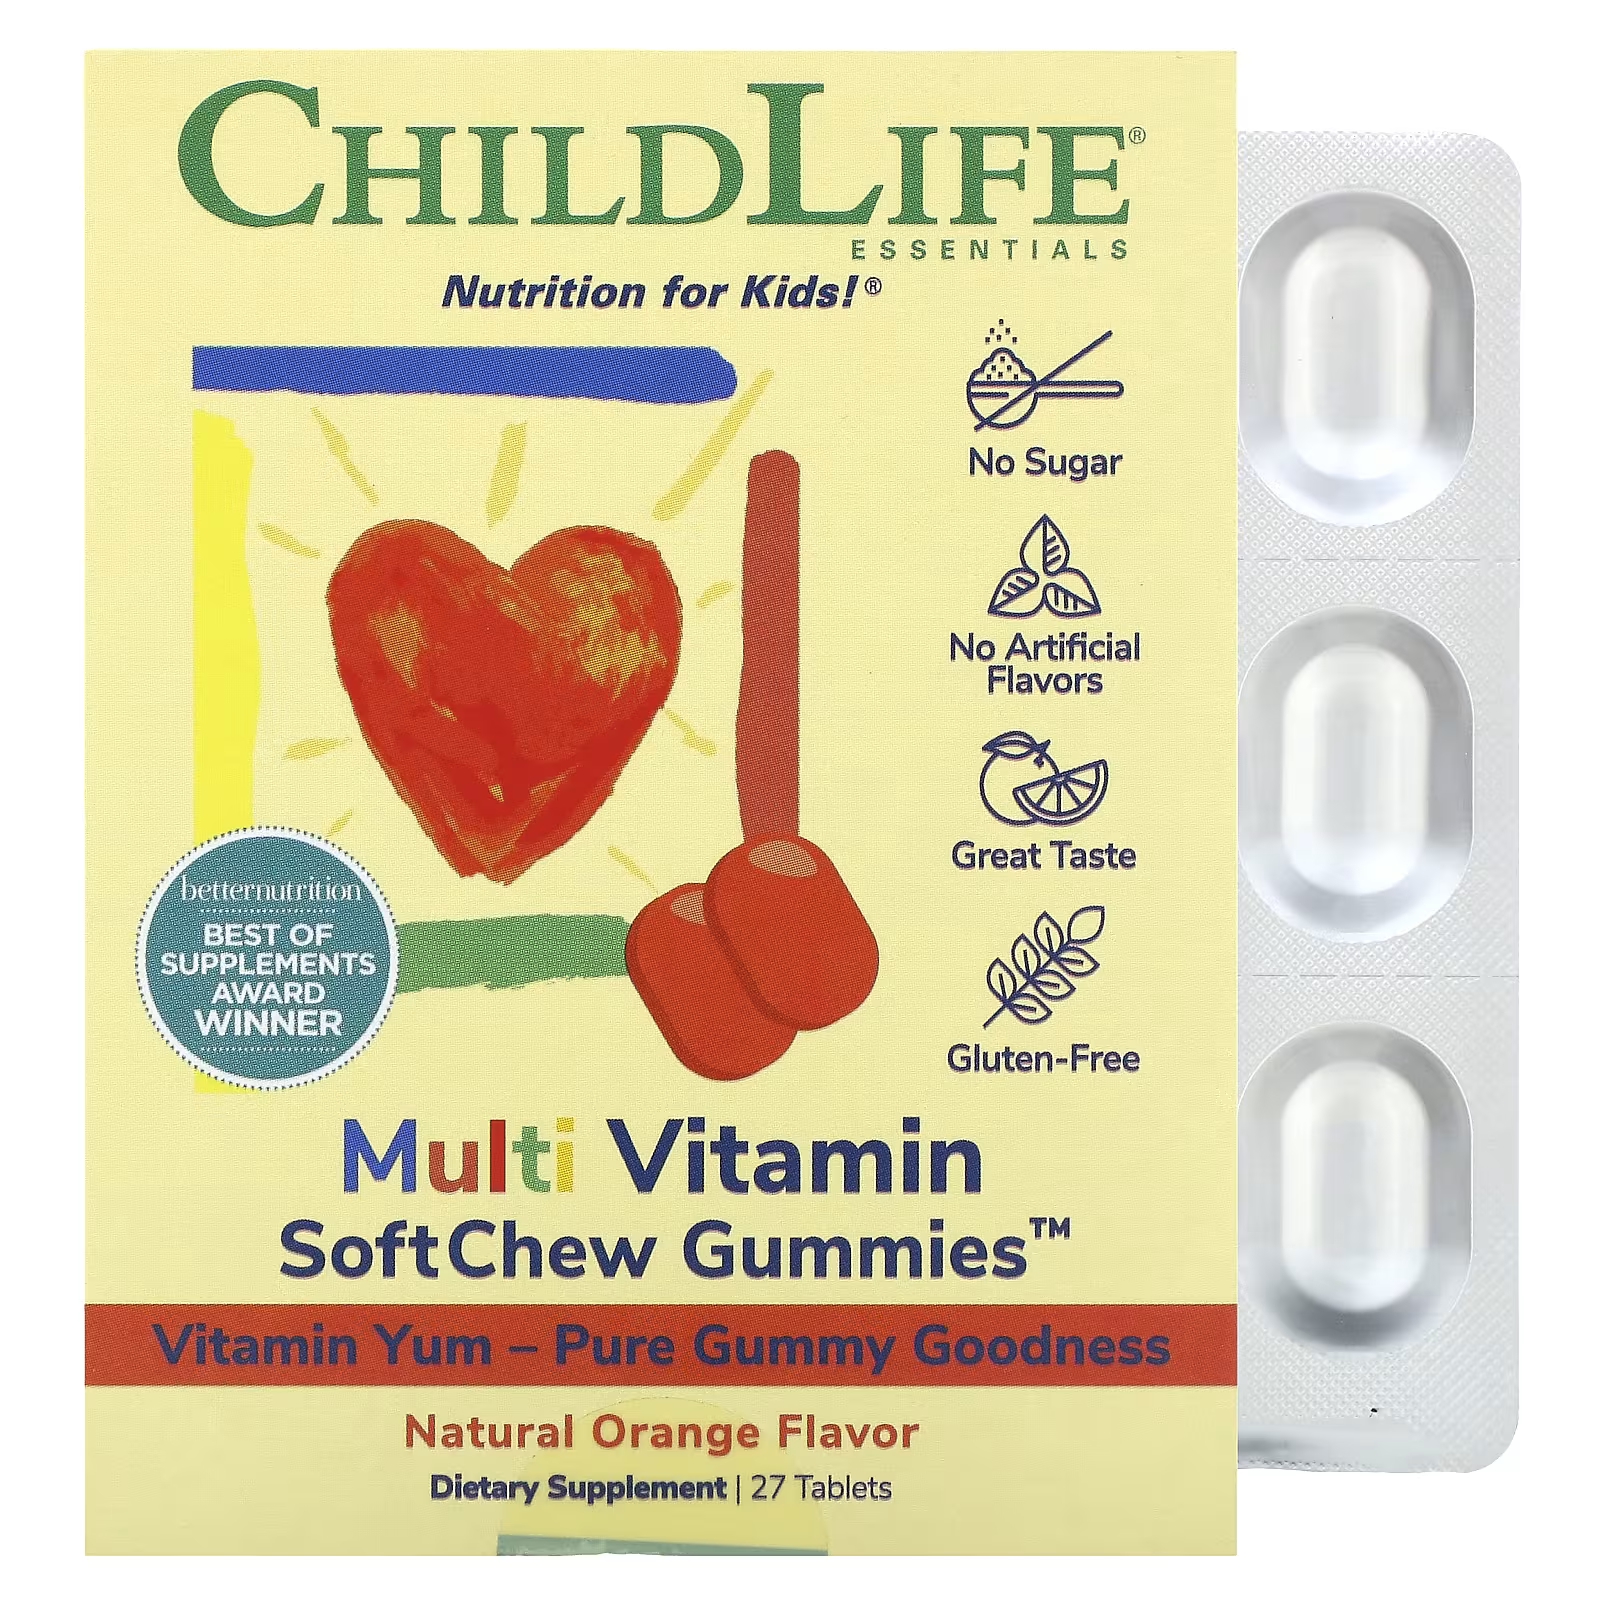 Мультивитаминные жевательные конфеты ChildLife Essentials SoftChew с натуральным апельсином, 27 таблеток